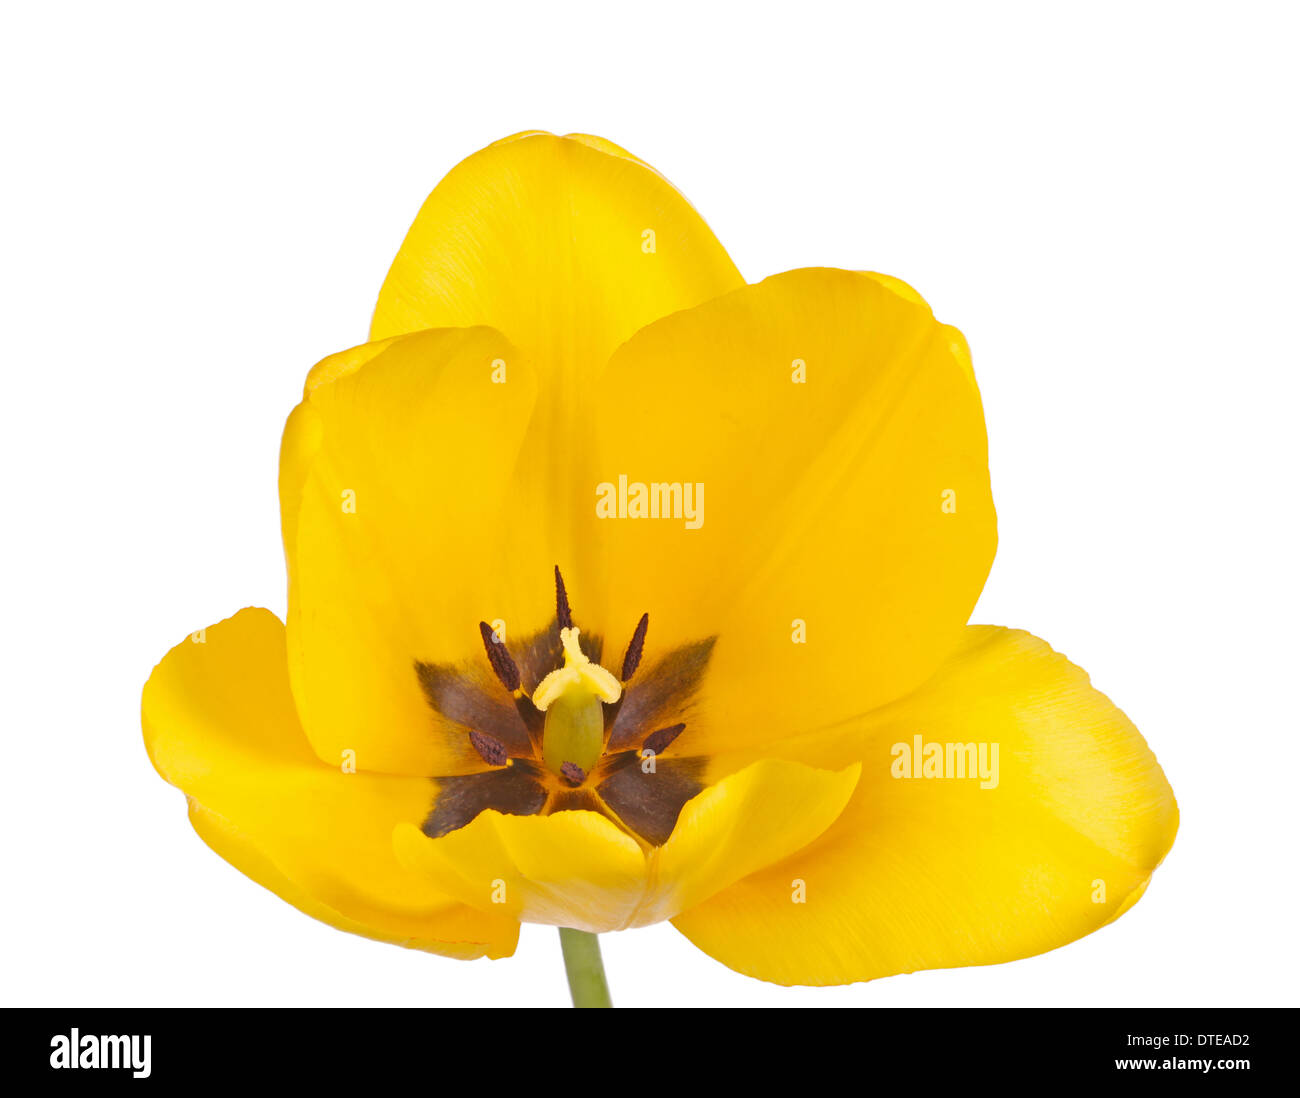 White and yellow tulip flower open Banque d'images détourées - Alamy